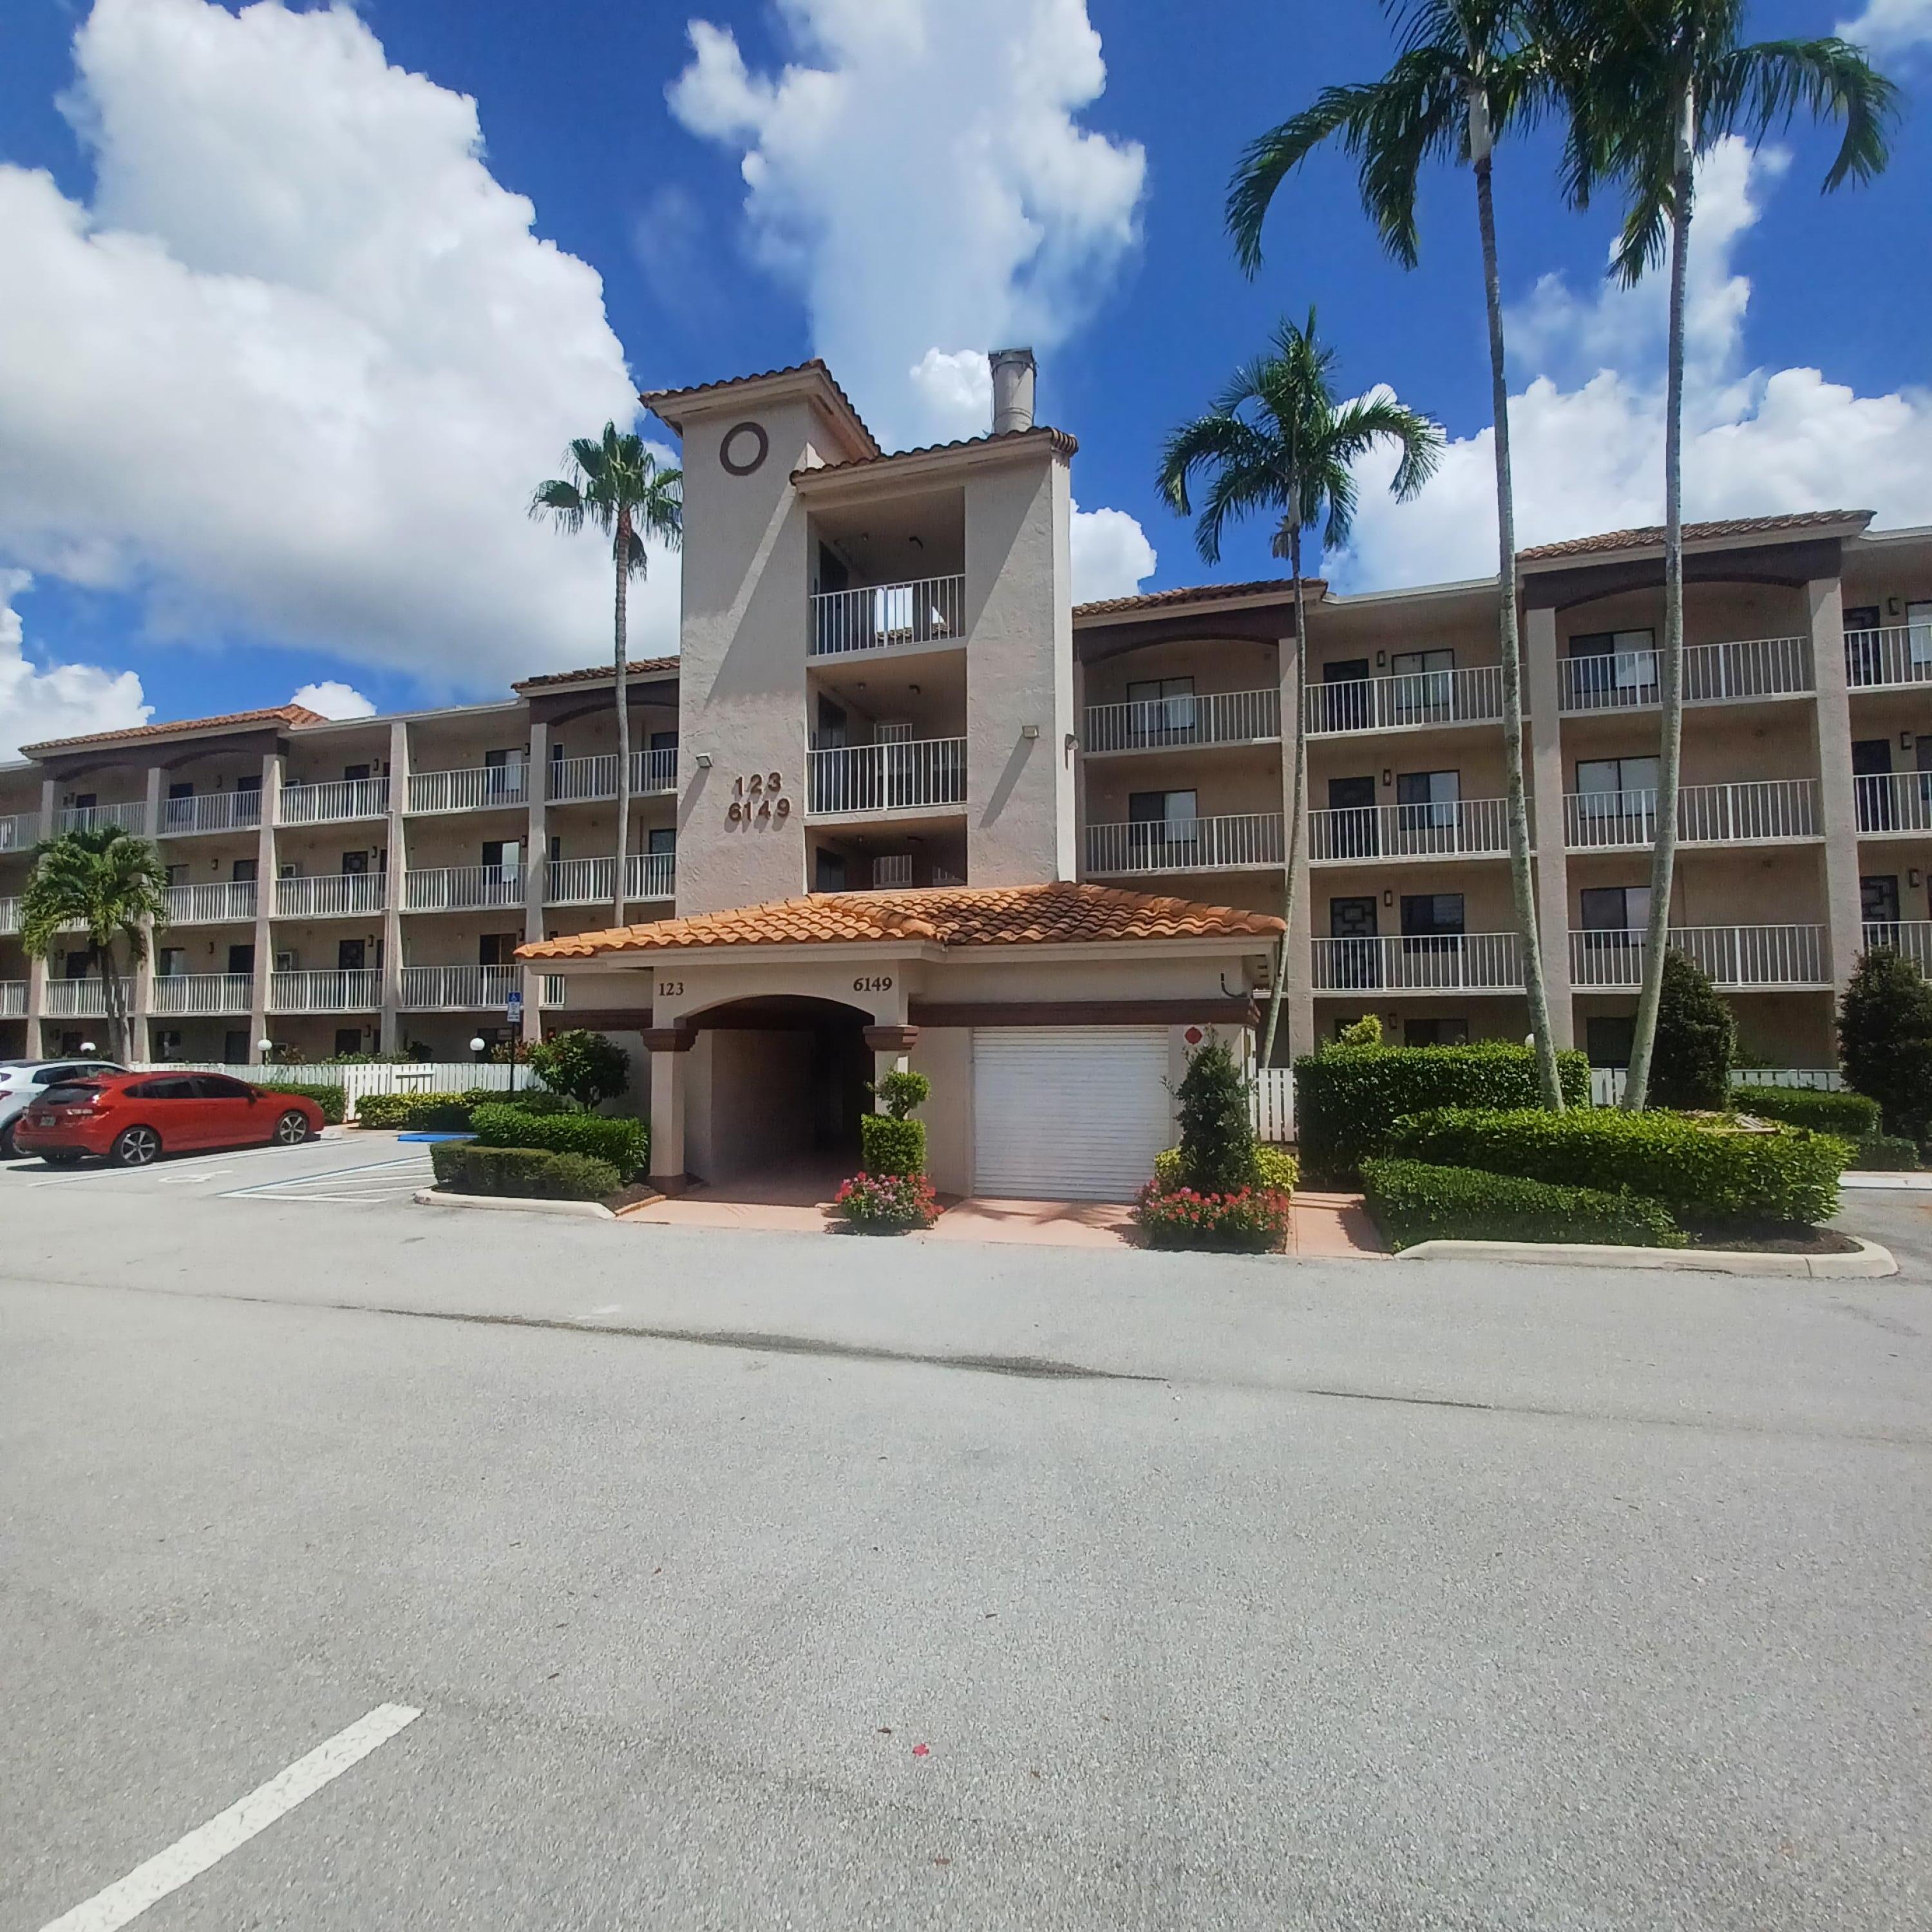 6149 Pointe Regal Circle 110, Delray Beach, Palm Beach County, Florida - 3 Bedrooms  
2 Bathrooms - 